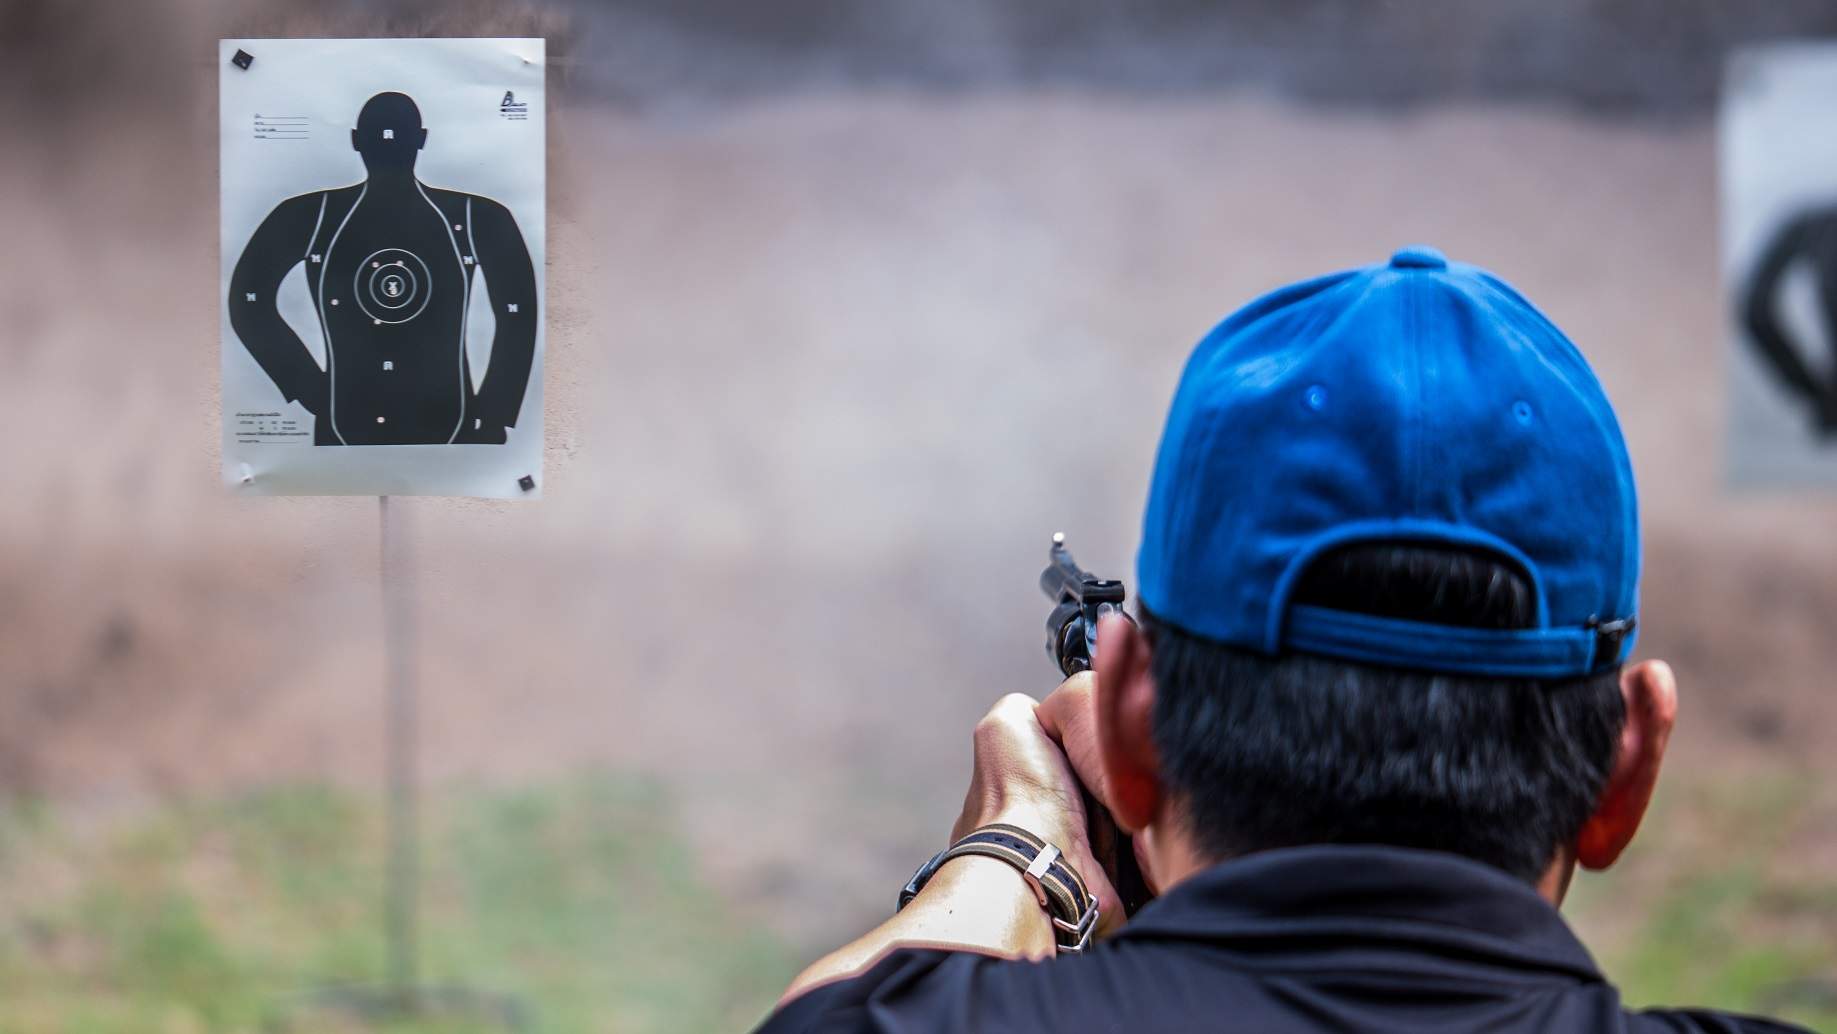 Target Practice at Shooting Range